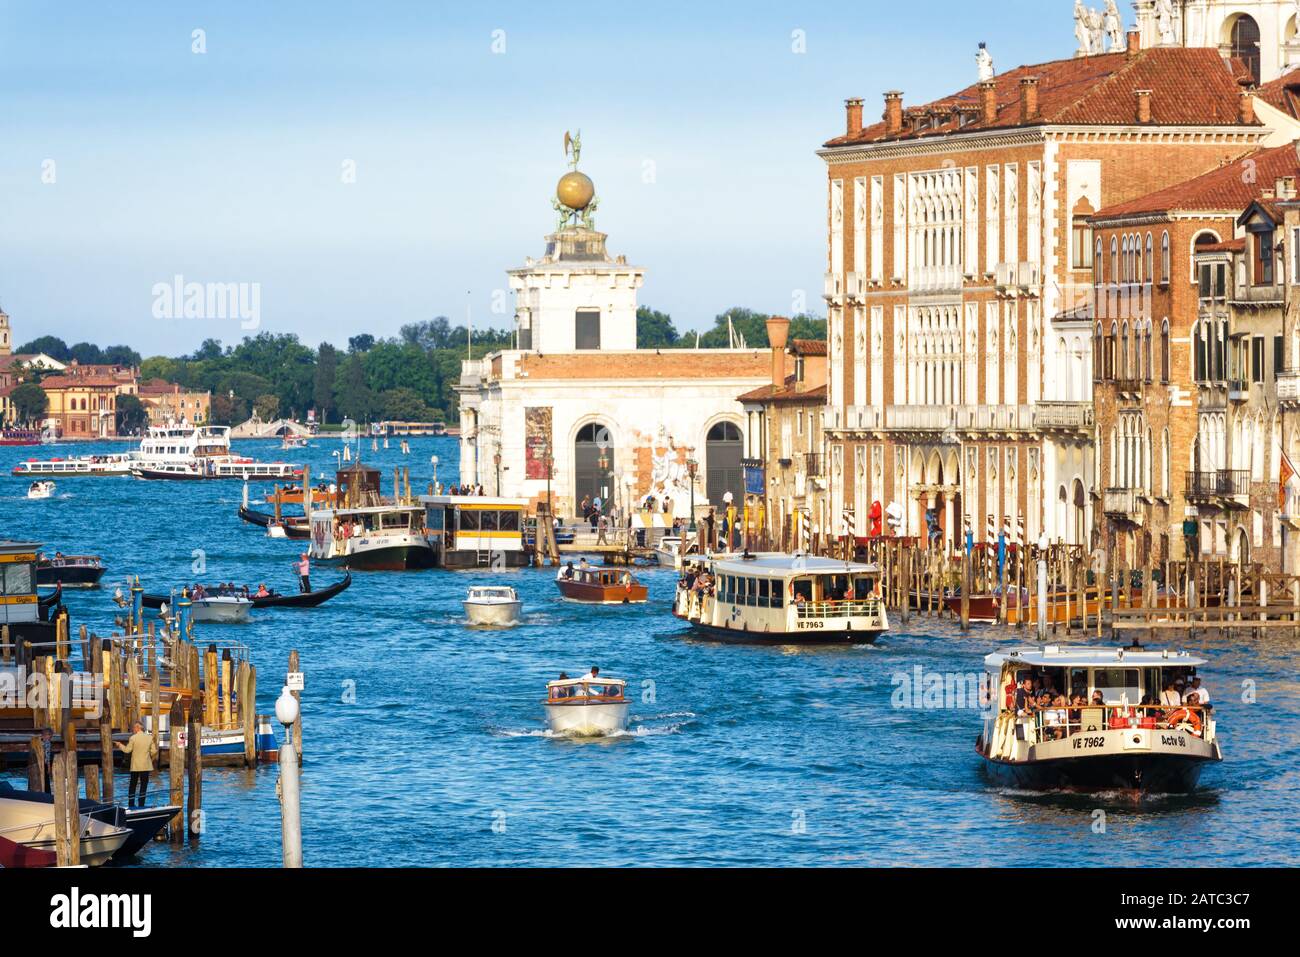 Venedig, Italien - 18. Mai 2017: Canal Grande mit Booten und Vaporetto. Es ist eine berühmte Touristenattraktion Venedigs. Blick auf die Hauptstraße von Venedig Stockfoto